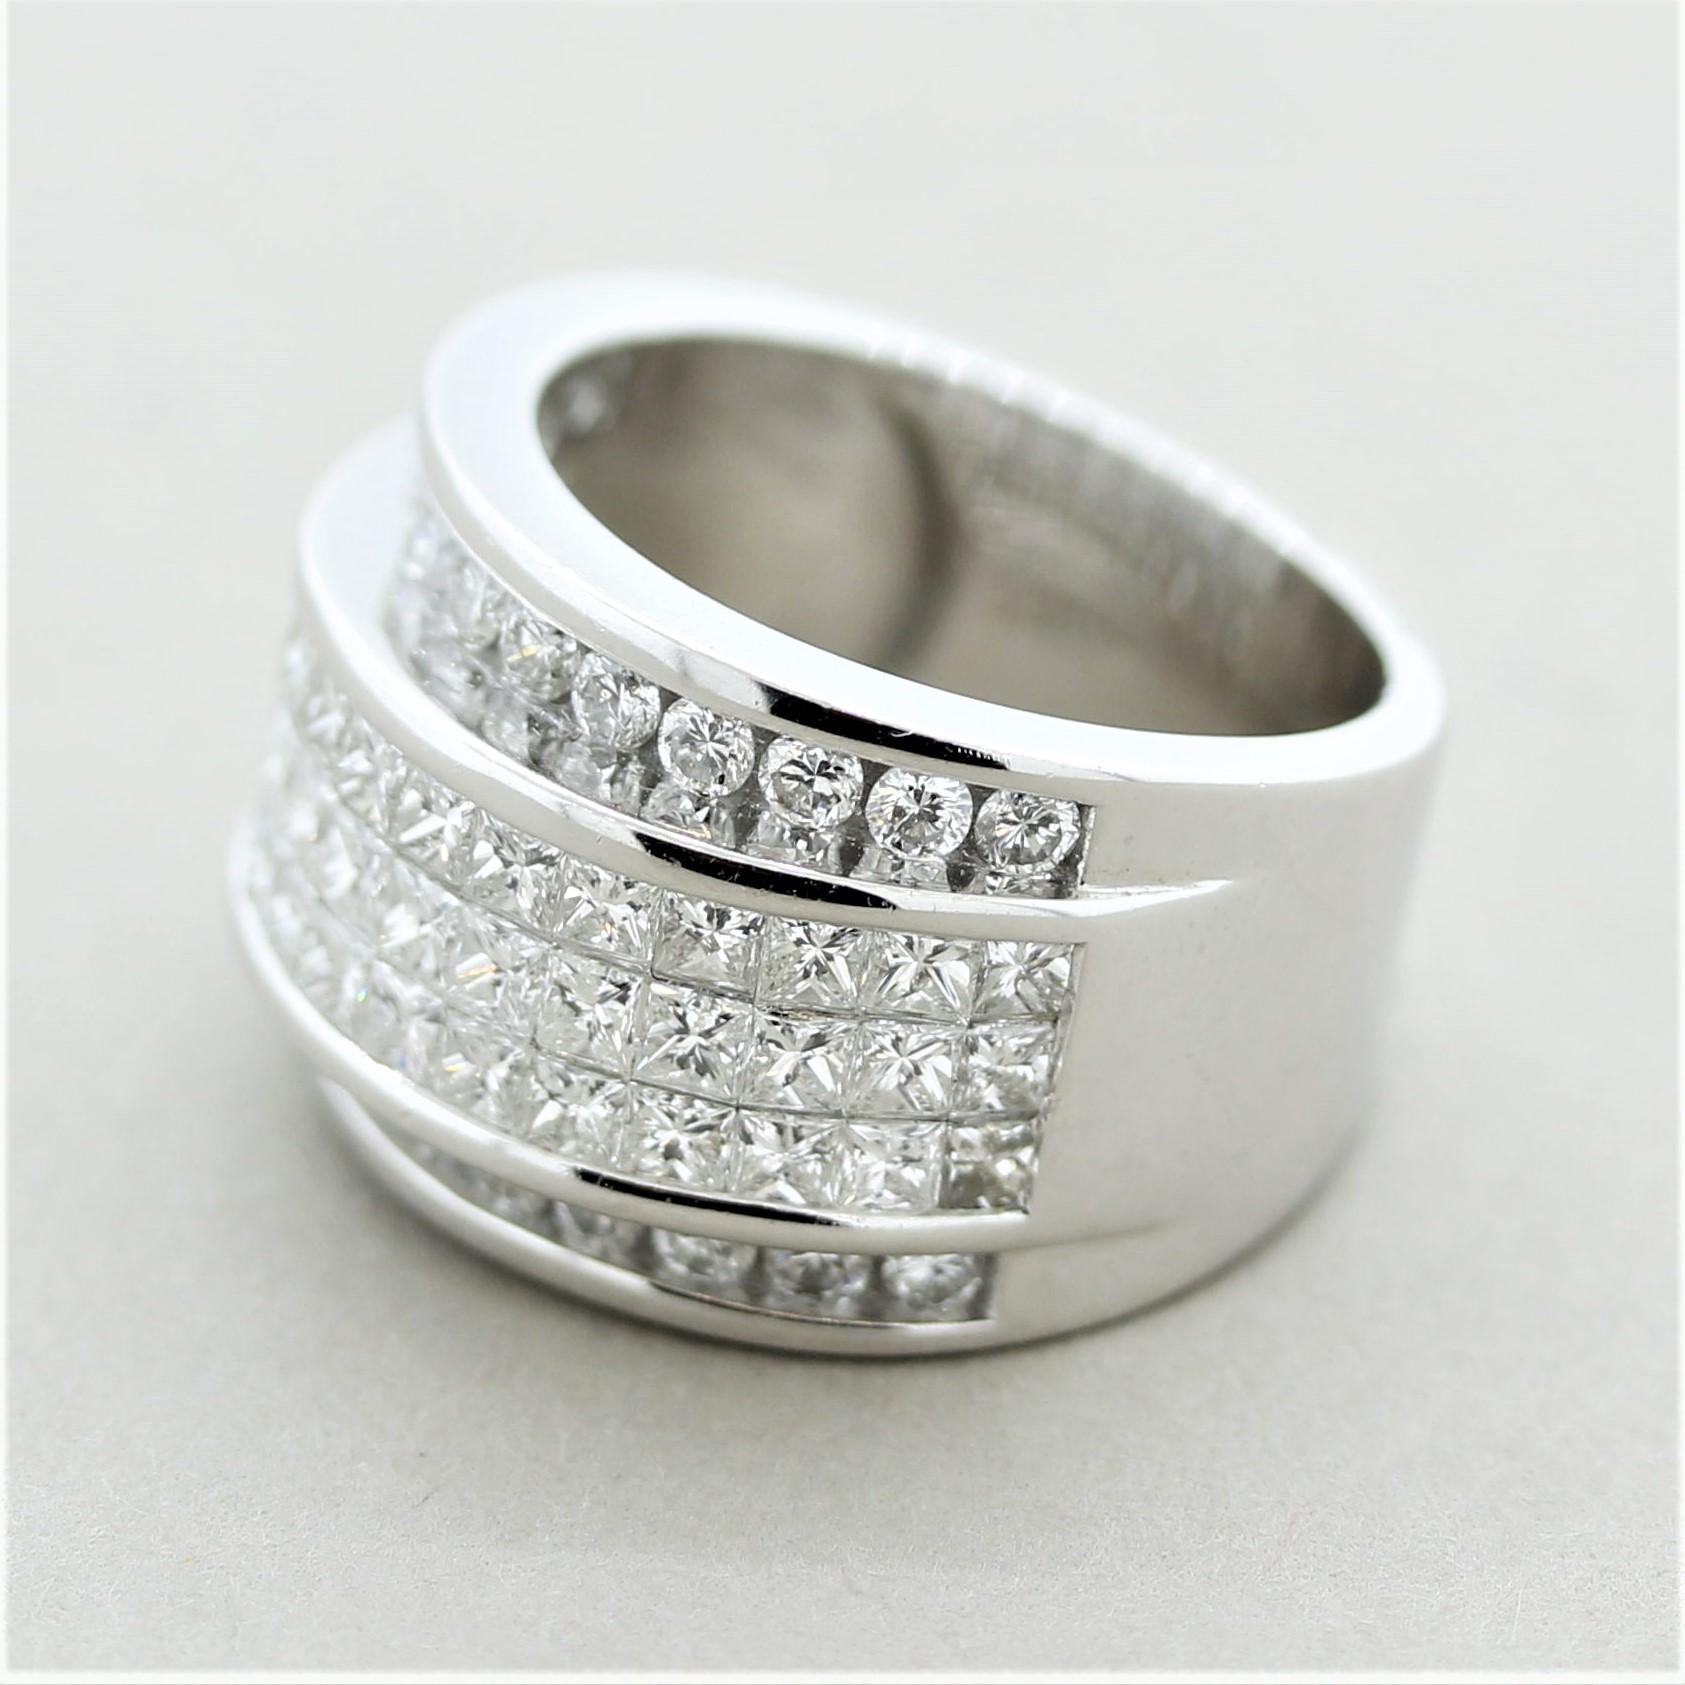 Mixed Cut Diamond Invisible-Set Gold Band Ring